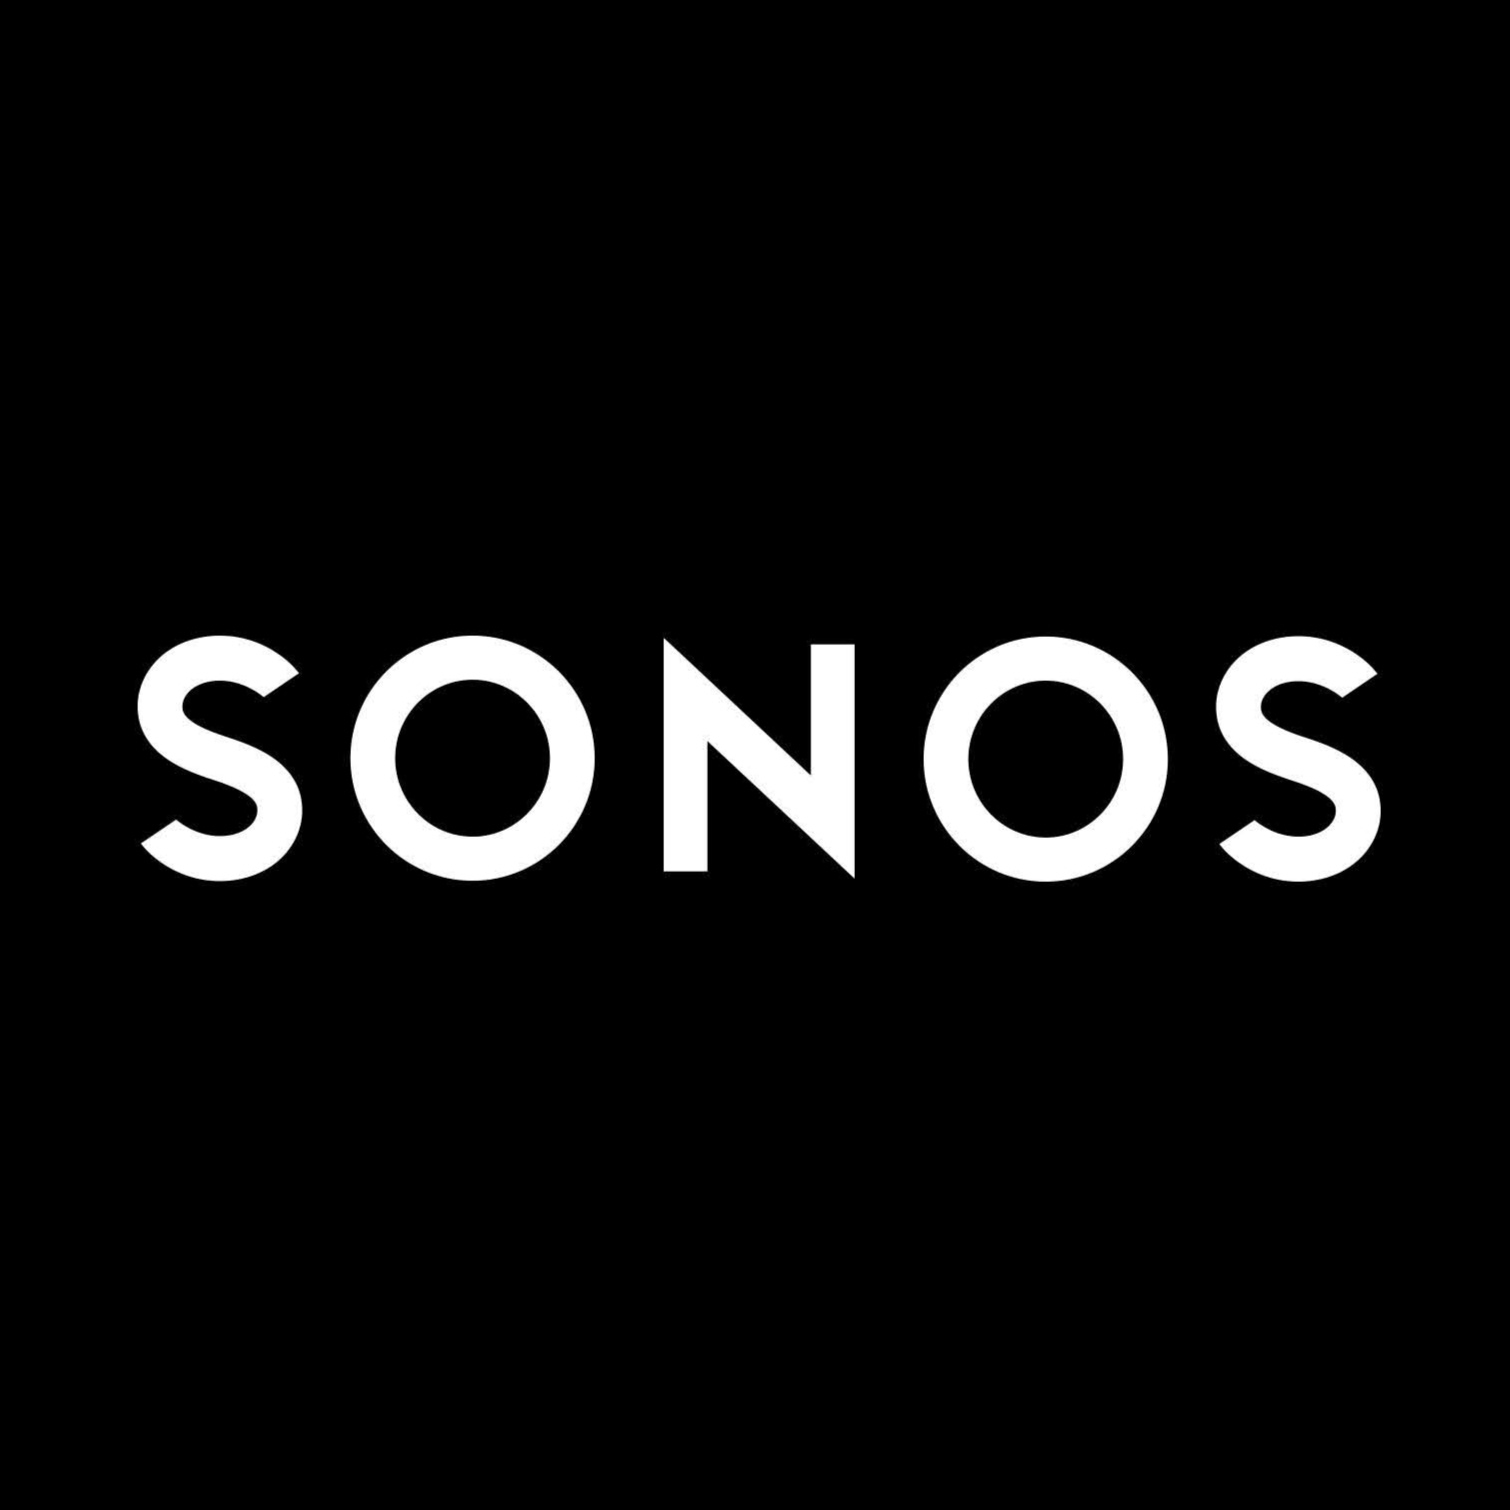 Новые динамики Sonos поражают: сверхмощный звук по низкой цене